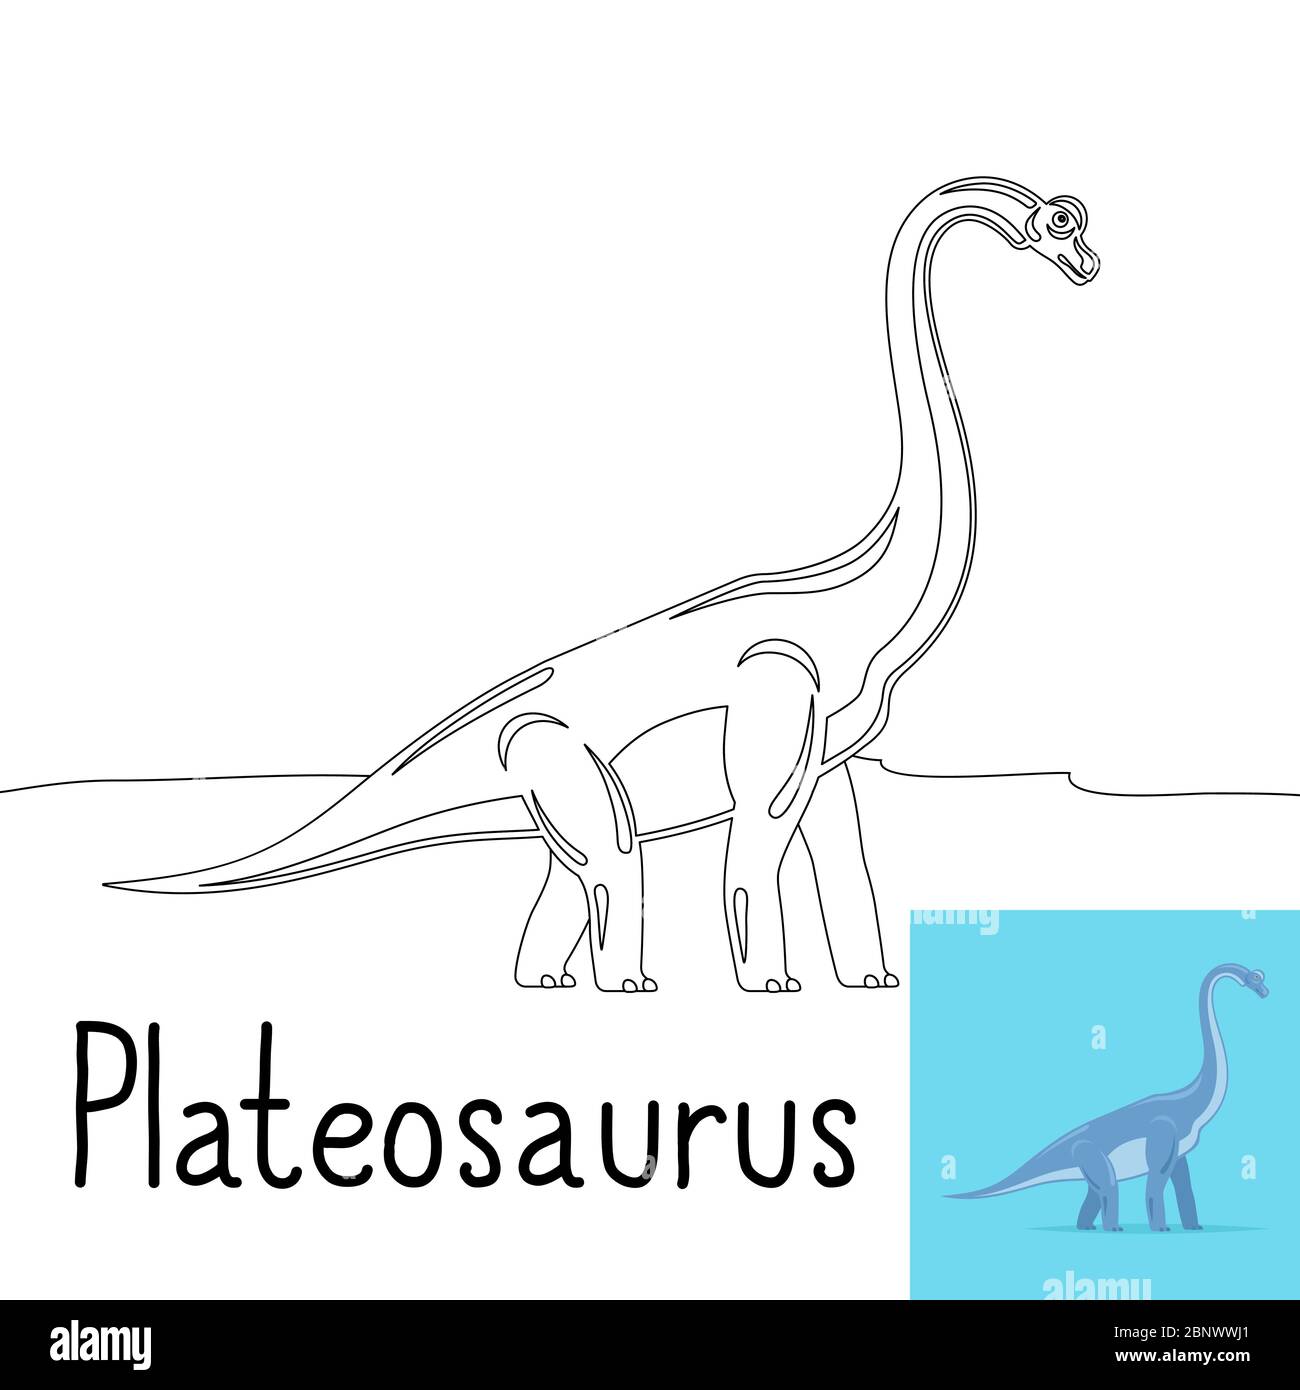 Pagina da colorare per bambini con dinosauro Plateosaurus e anteprima colorata. Illustrazione vettoriale Illustrazione Vettoriale